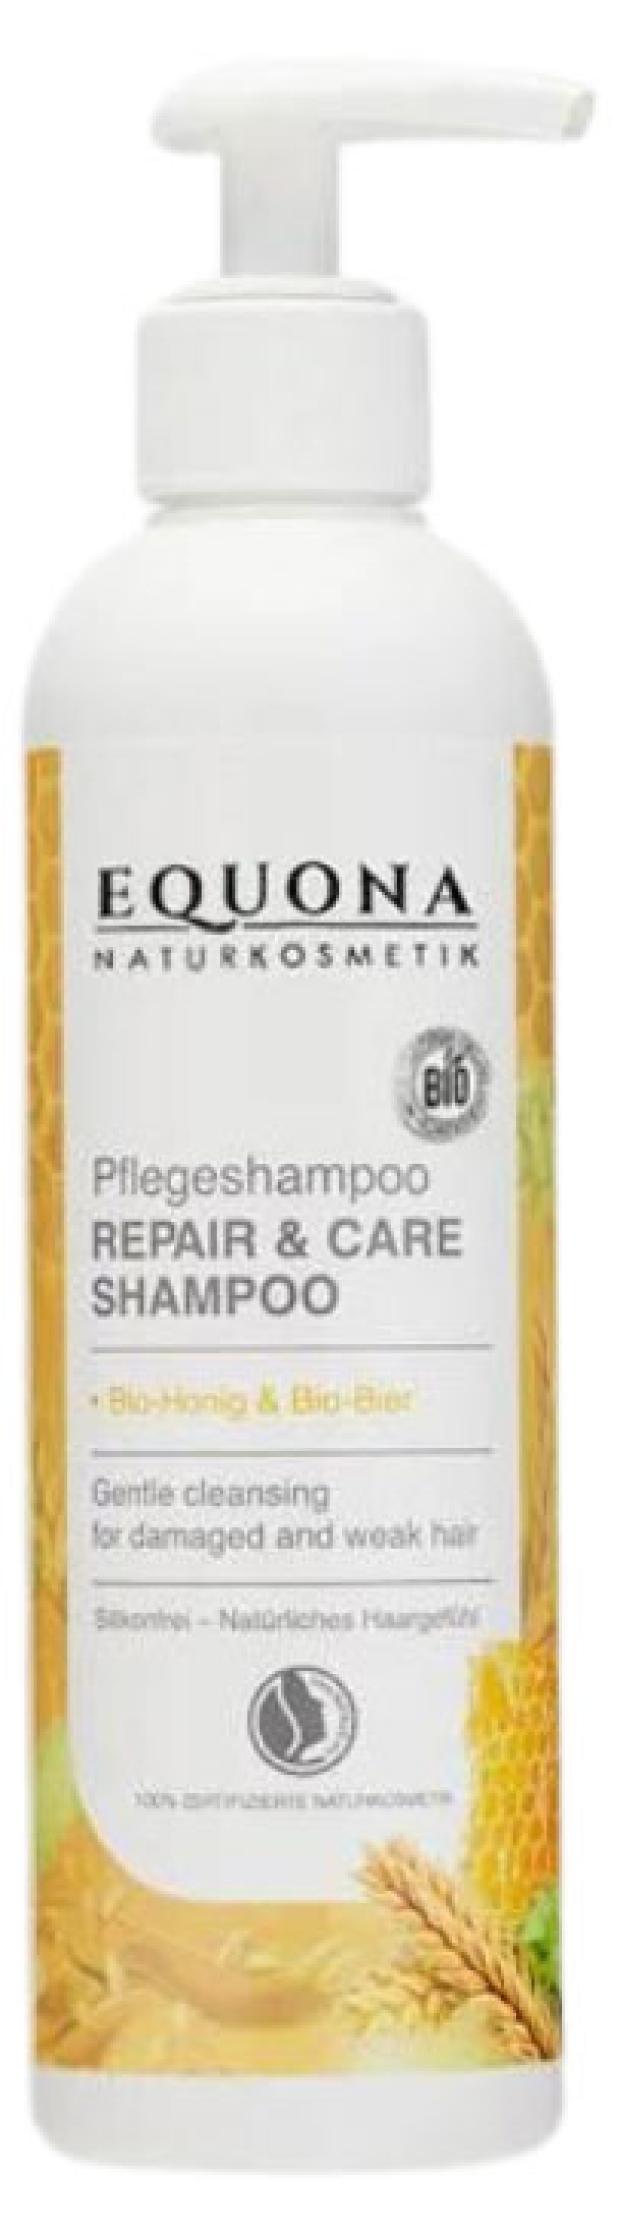 Шампунь для волос Equona Восстановление и уход, 250 мл